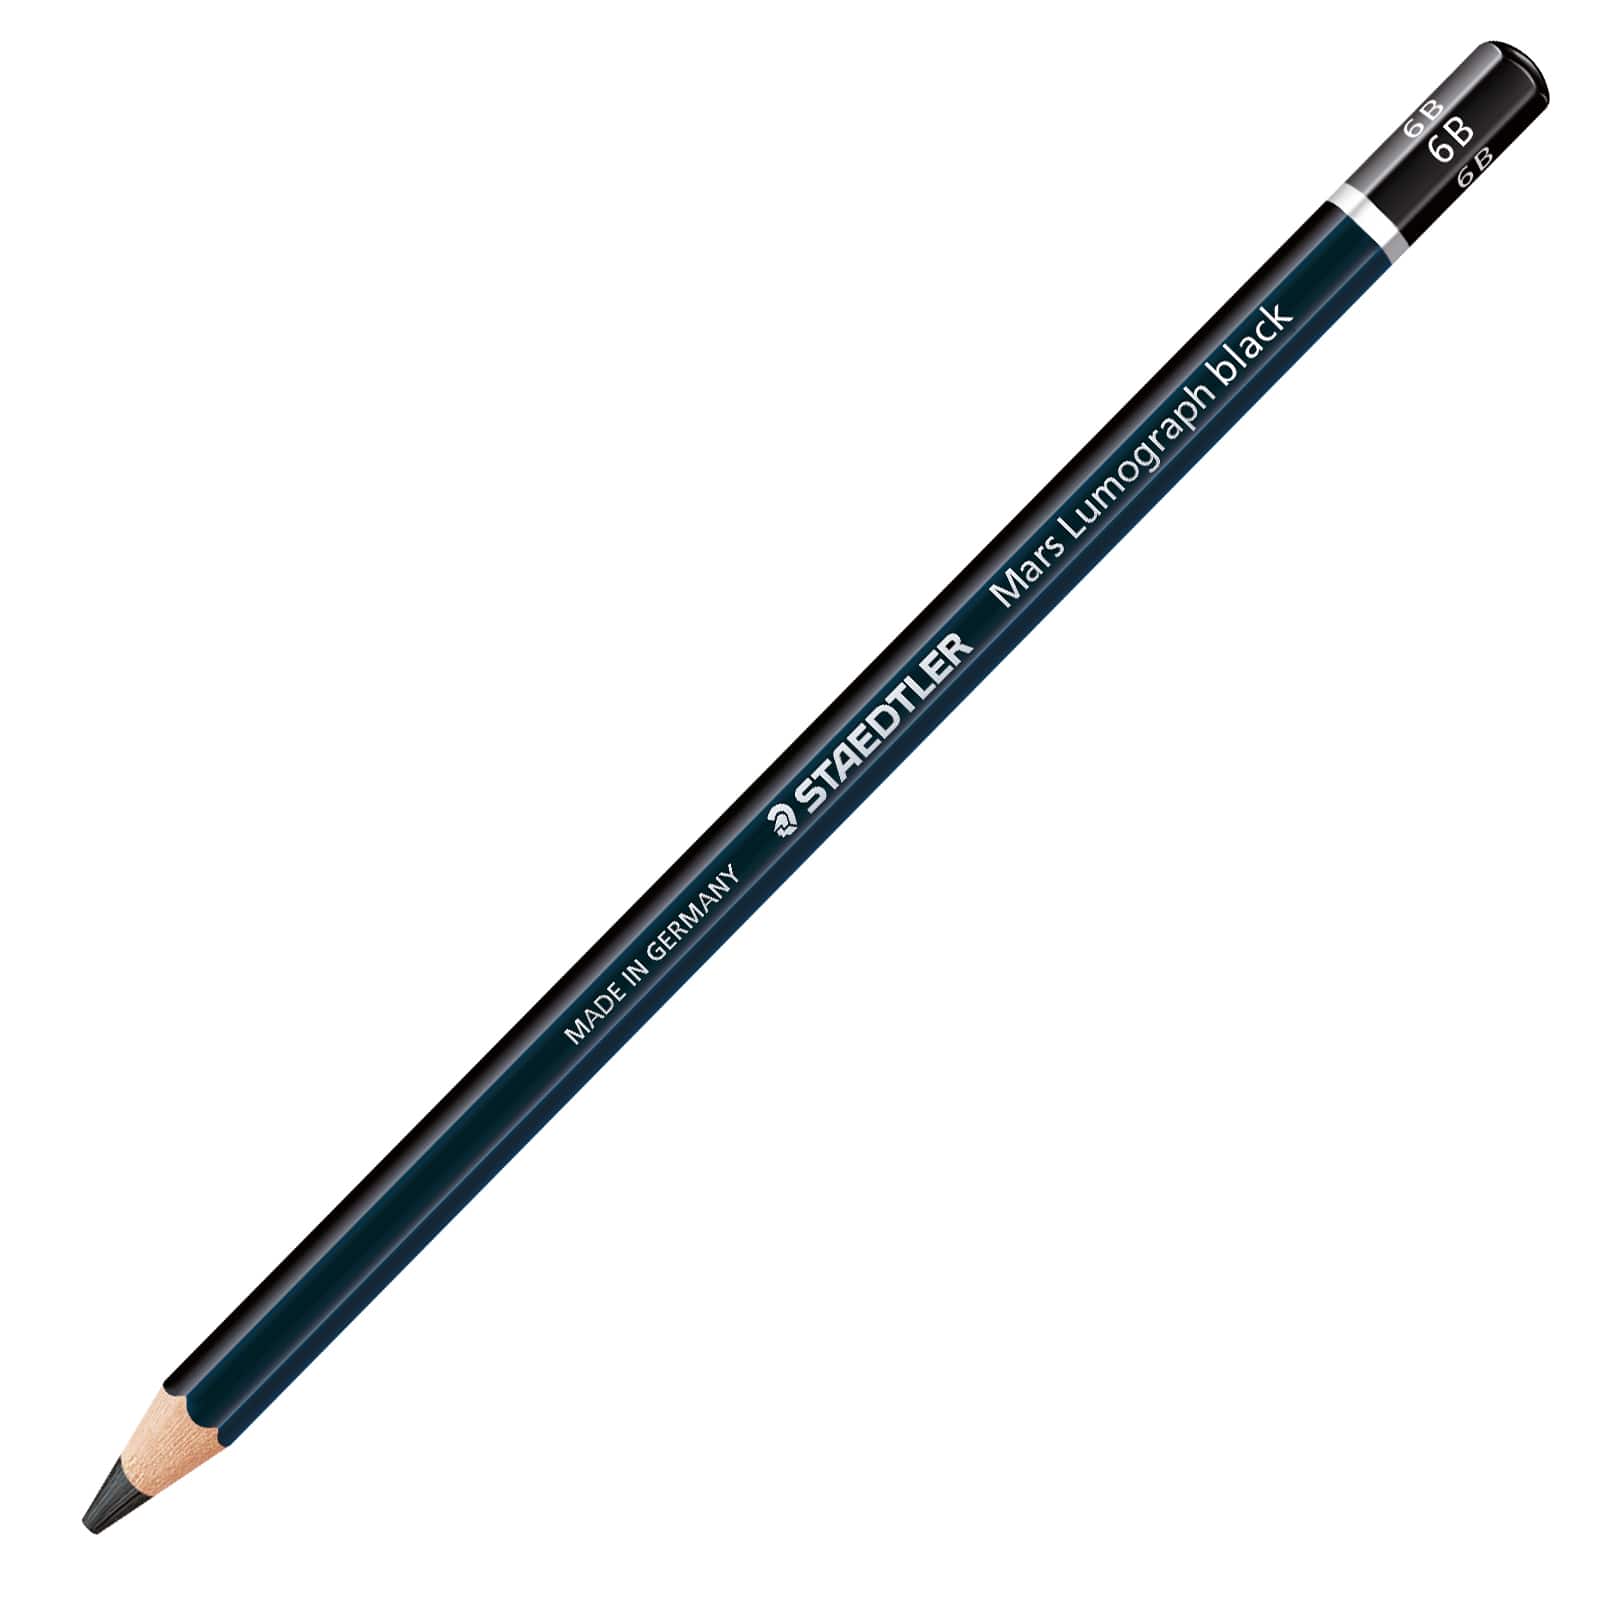 Staedtler Mars Lumograph Black, Carbon Blend Provides Jet Black Lines,  Professional Art Pencils, Tin of 6 Assorted Black Sketch Pencils, 100B G6